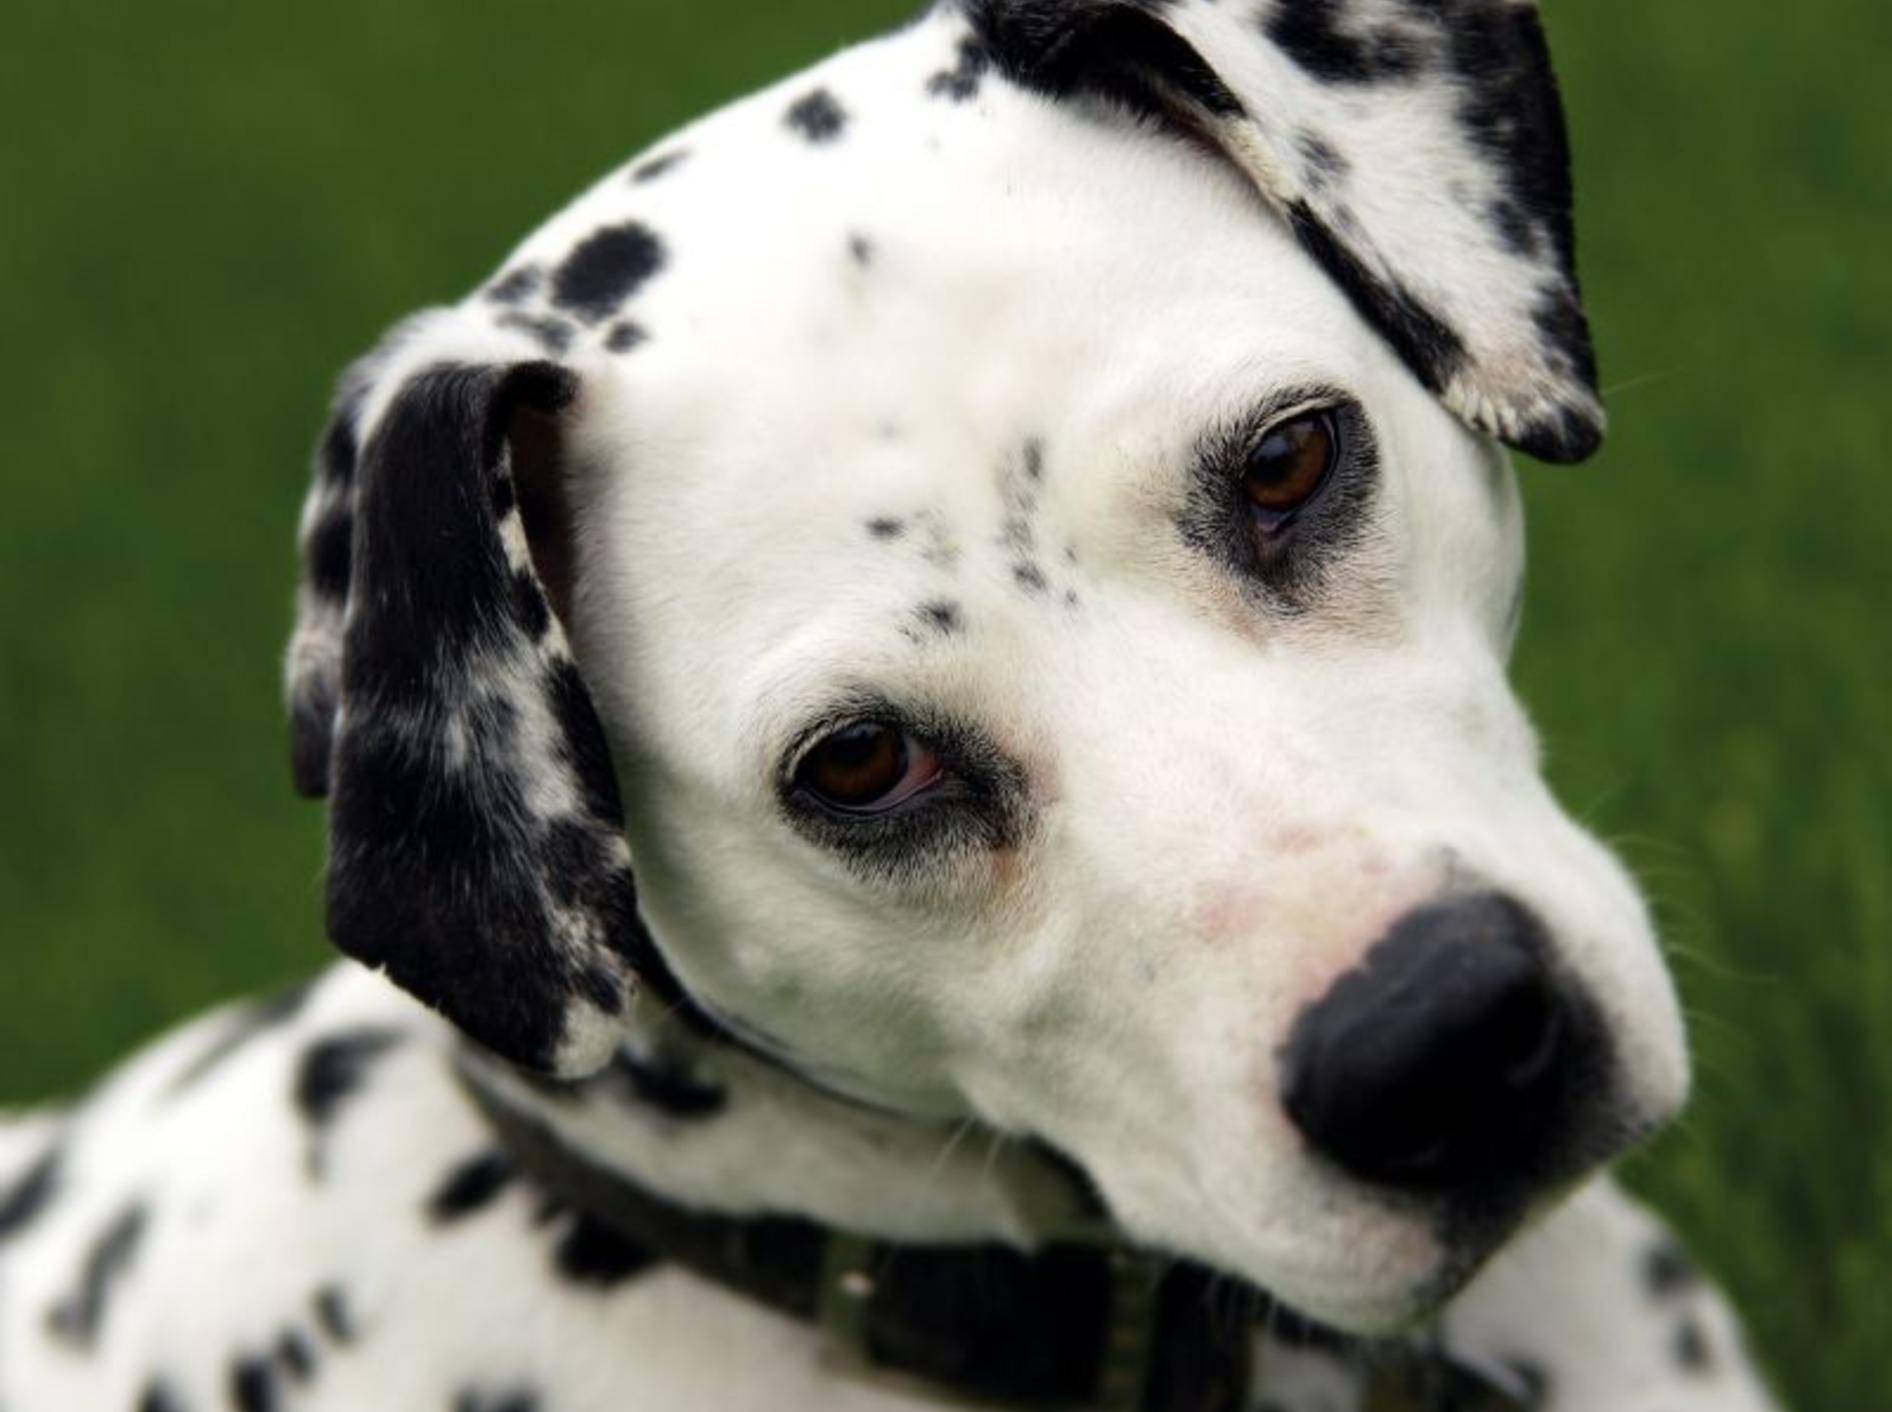 Treue Hundeaugen: In den Dalmatiner muss man sich einfach verlieben! — Bild: Shutterstock / GWImages